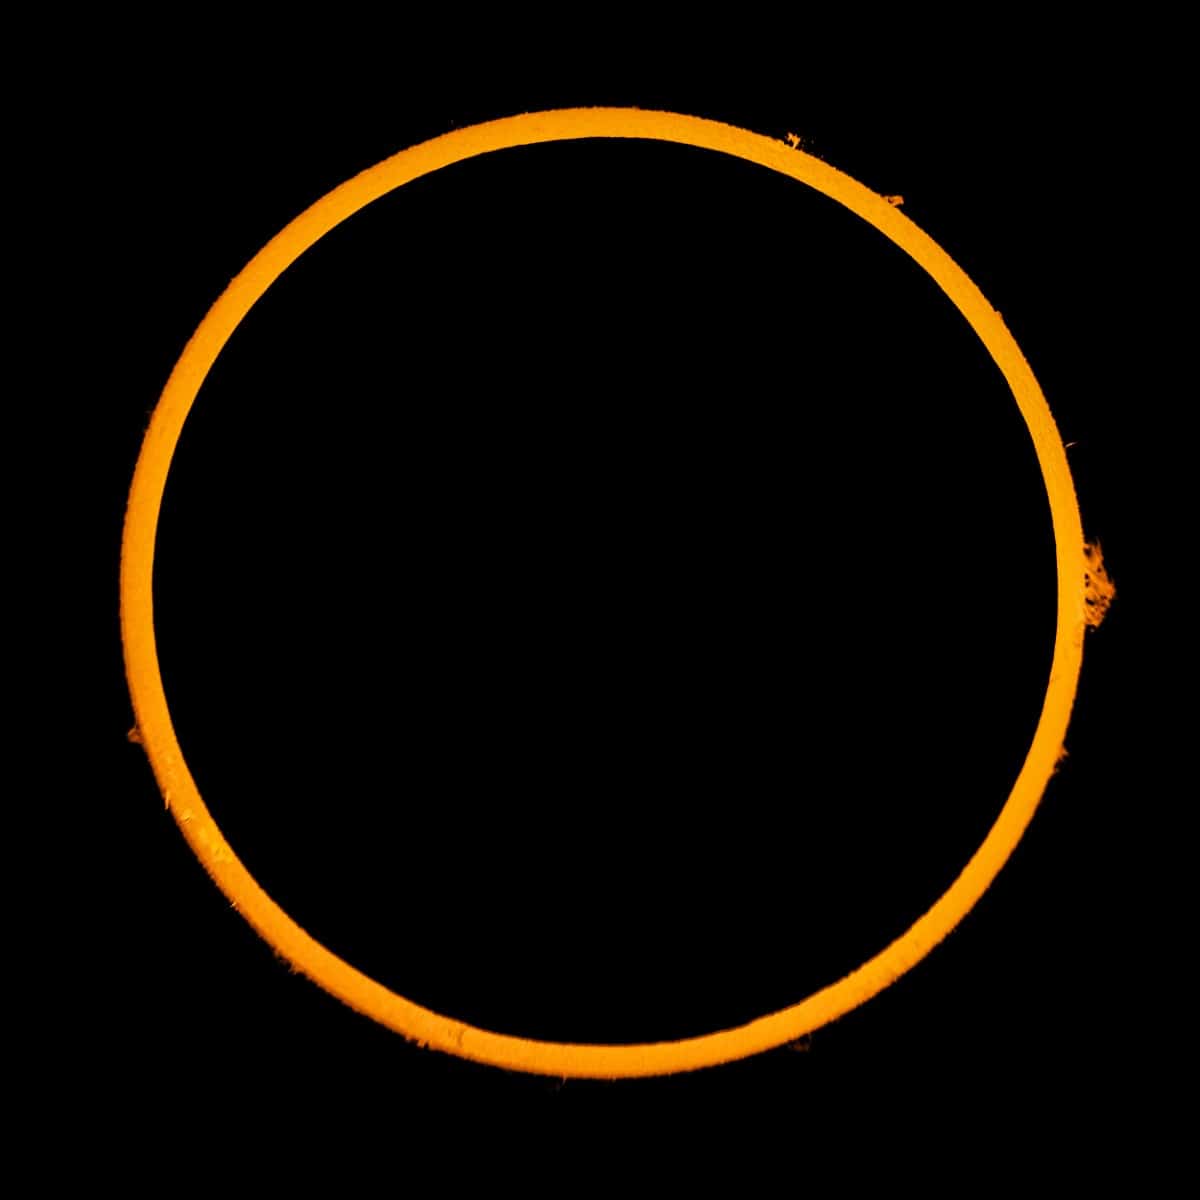 Ring of Fire Eclipse - Jason Kurth